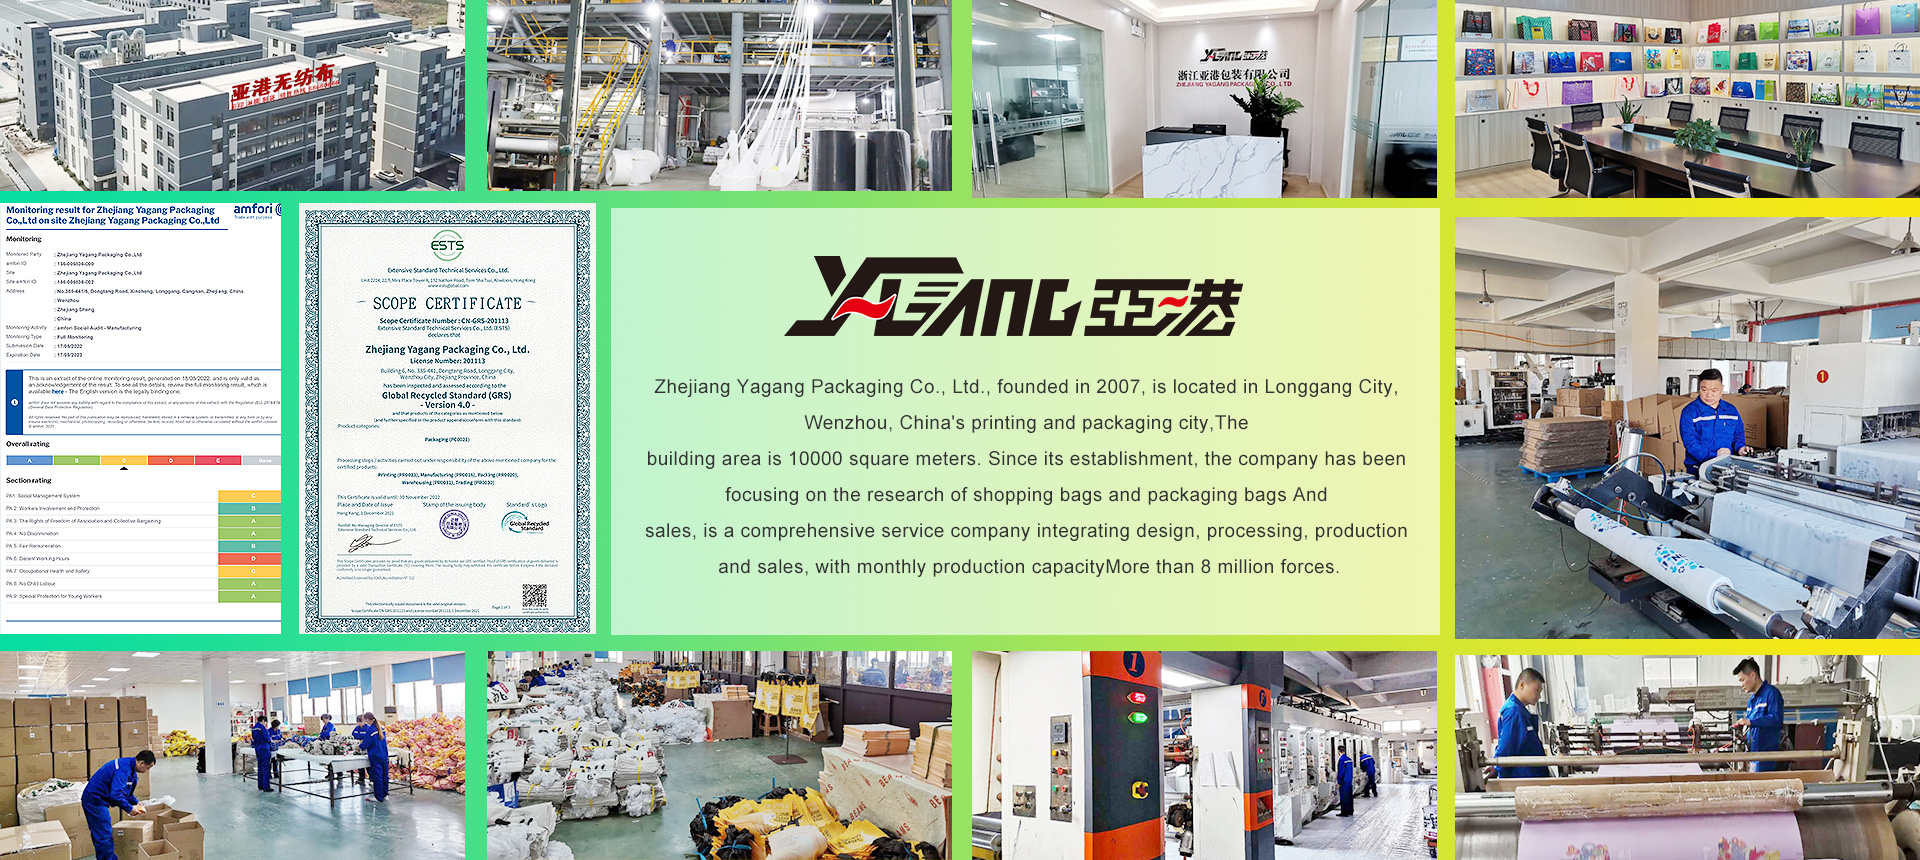 Zhejiang Yagang Packaging Co., Ltd.